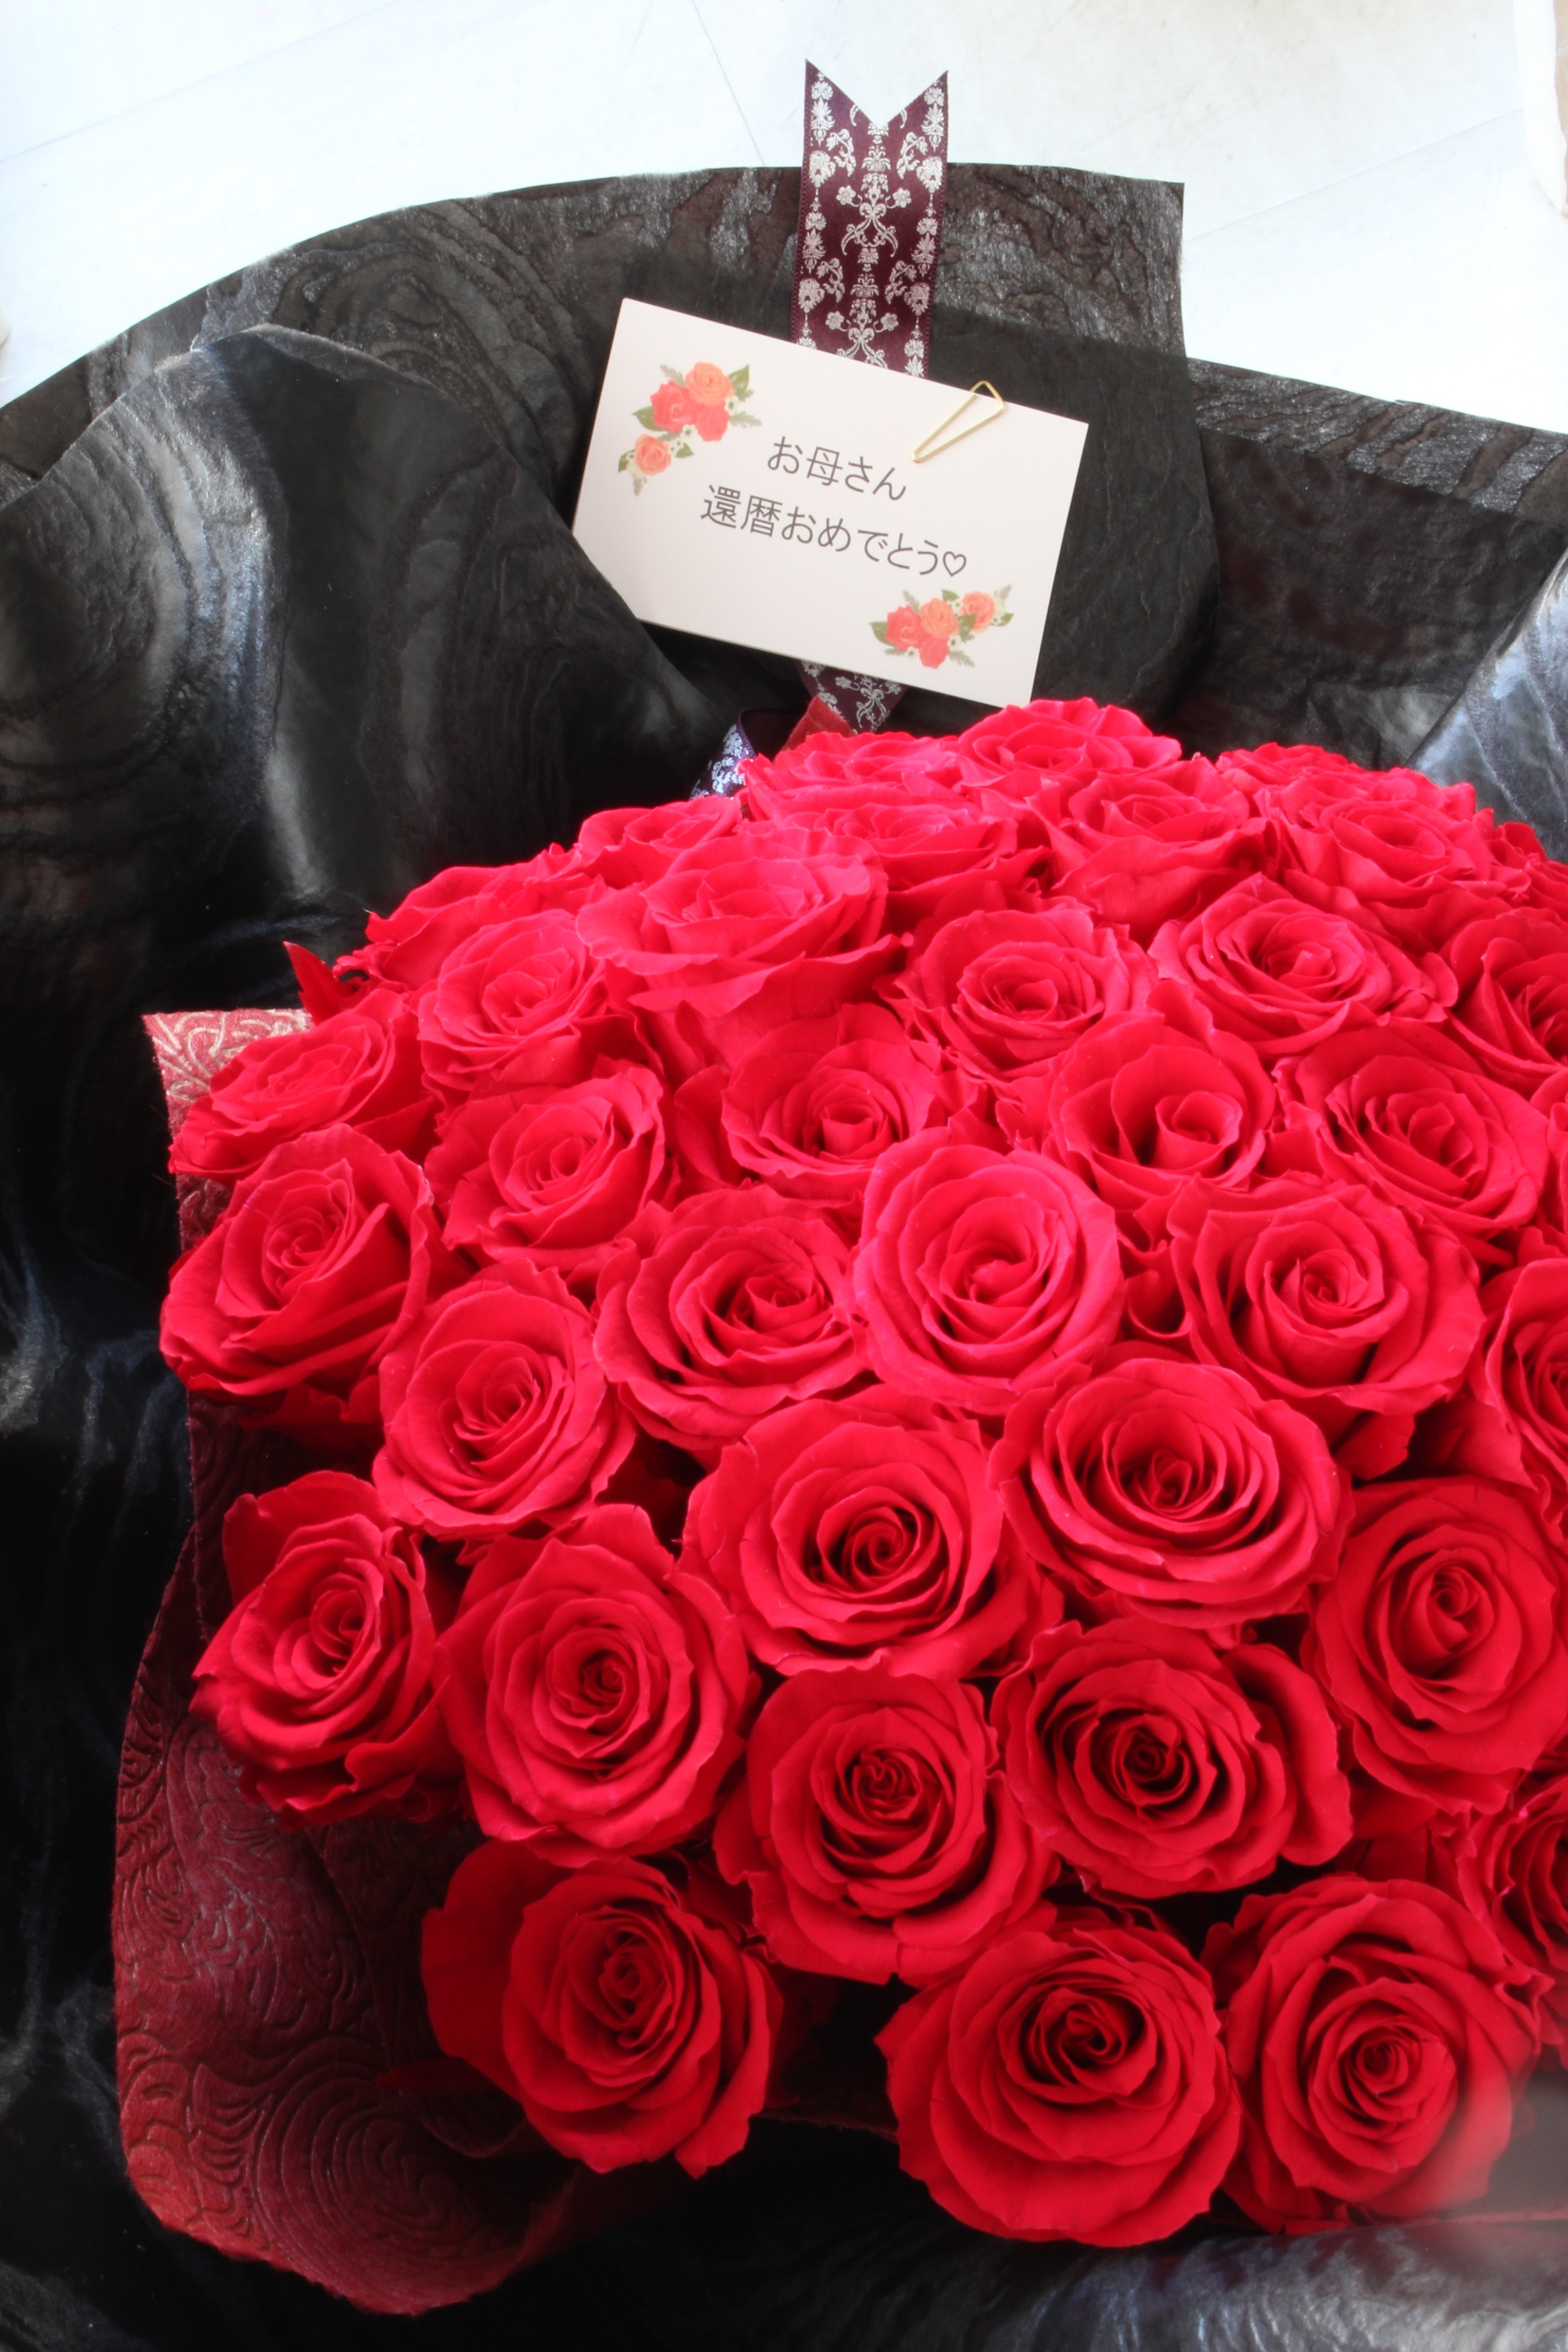 60輪の薔薇 花束 還暦 福岡のプリザーブドフラワー専門店 Rosejunoローズユノwebshop ネットショッピング